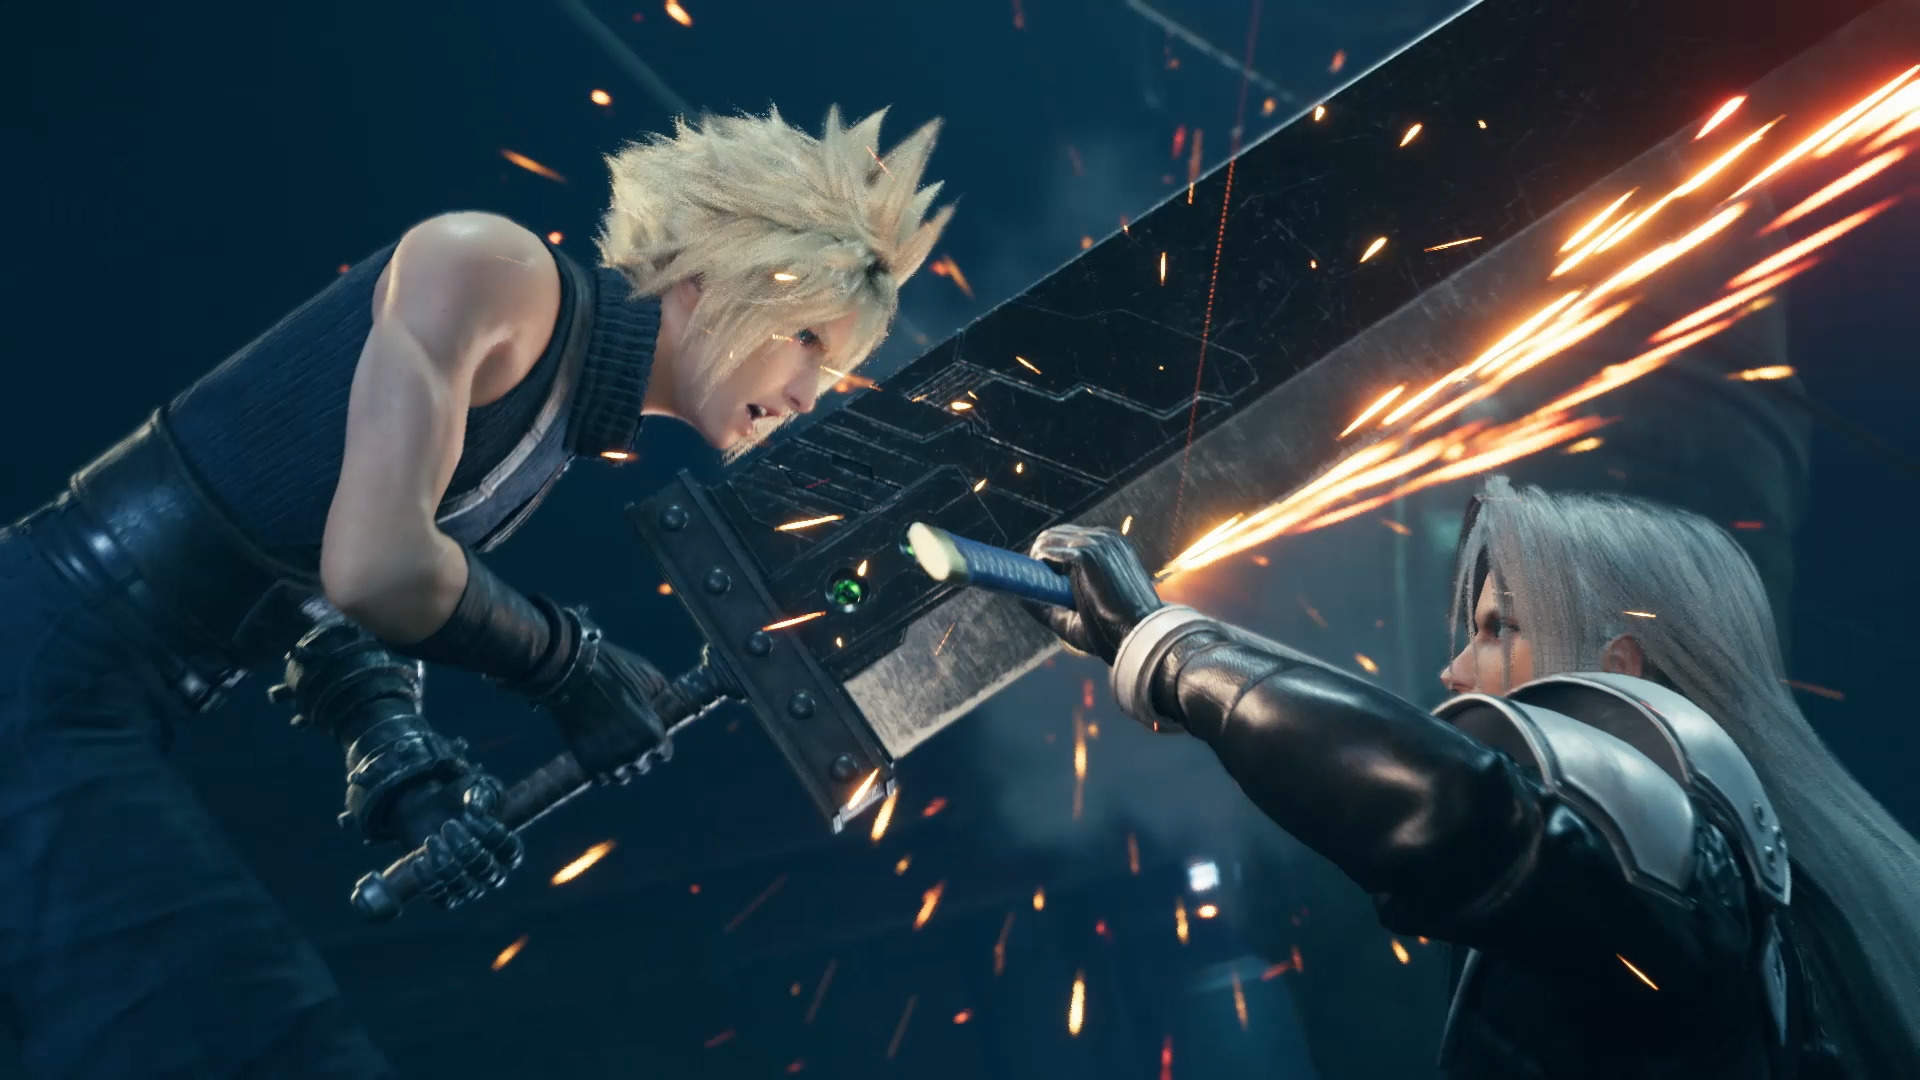 Bilder zu Final Fantasy 7 Remake: PS5-Version schöpft die technischen Möglichkeiten nicht komplett aus